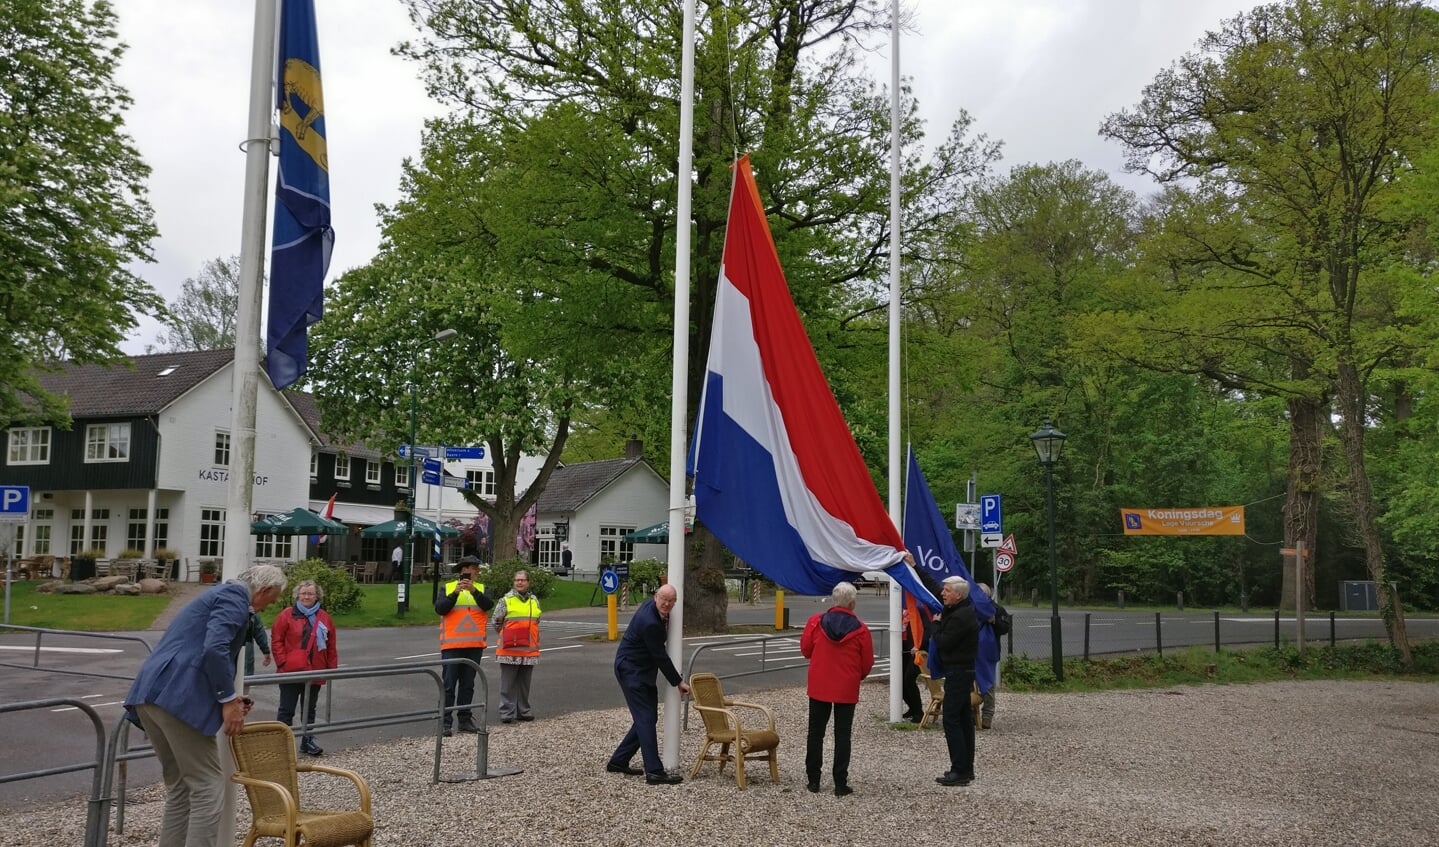 Het traditionele vlag hijsen was ditmaal bij afwezigheid van burgemeester Mark Röell (Baarn) voorbestemd voor Jeroen van den Berg (Contactcommissie Lage Vuursche). [HvdB]

